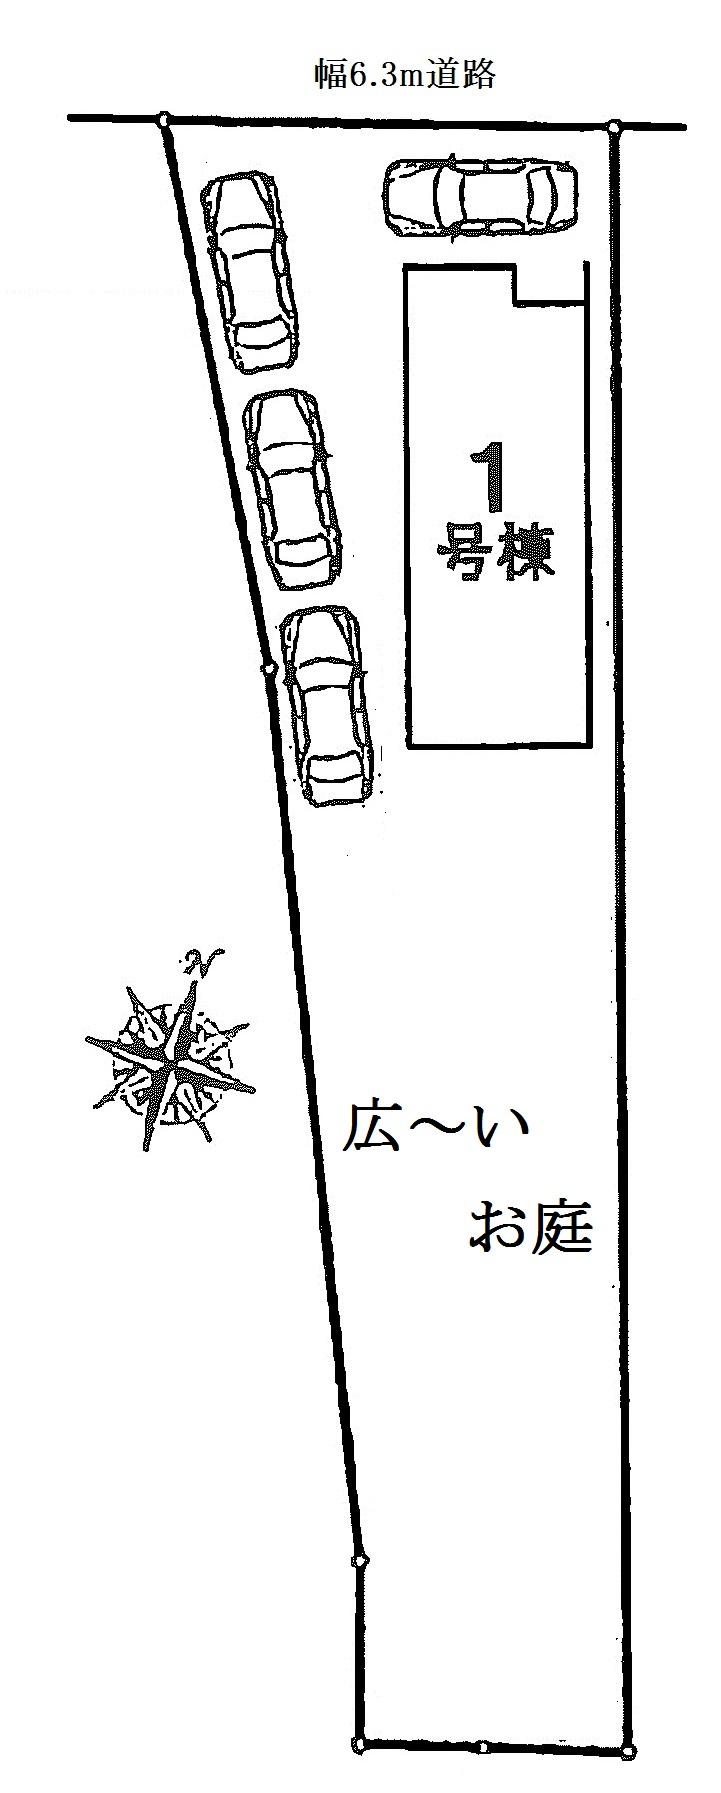 Compartment figure. 27,800,000 yen, 4LDK, Land area 215.77 sq m , Building area 103.27 sq m